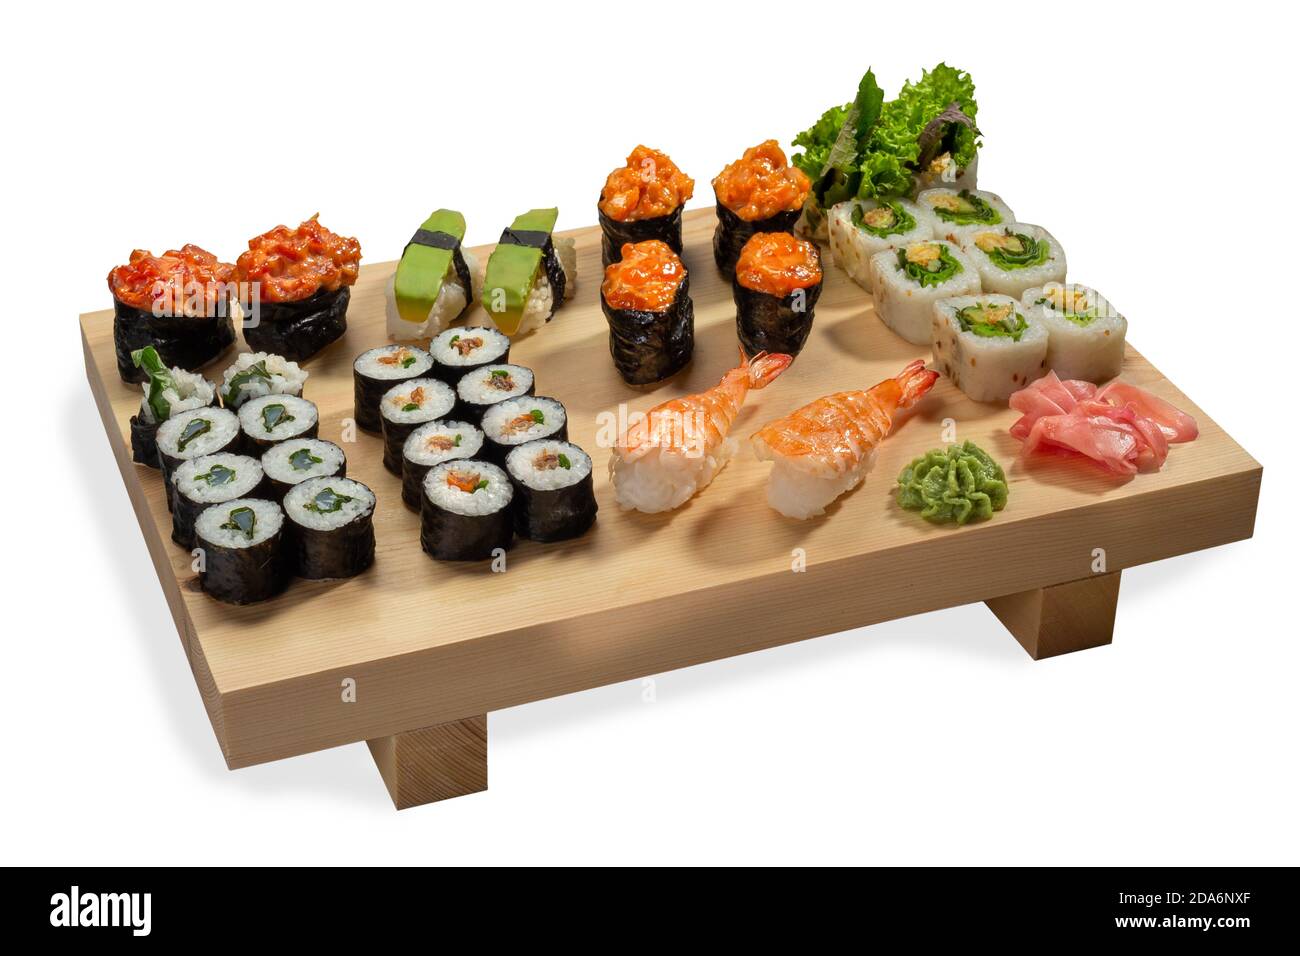 Guncan avec anguille, sushi frais d'avocat, Ikura, EBI, rouleaux de sushi Uramaki, rouleaux de papier de riz sur une planche en bois. Isolé sur fond blanc. Banque D'Images